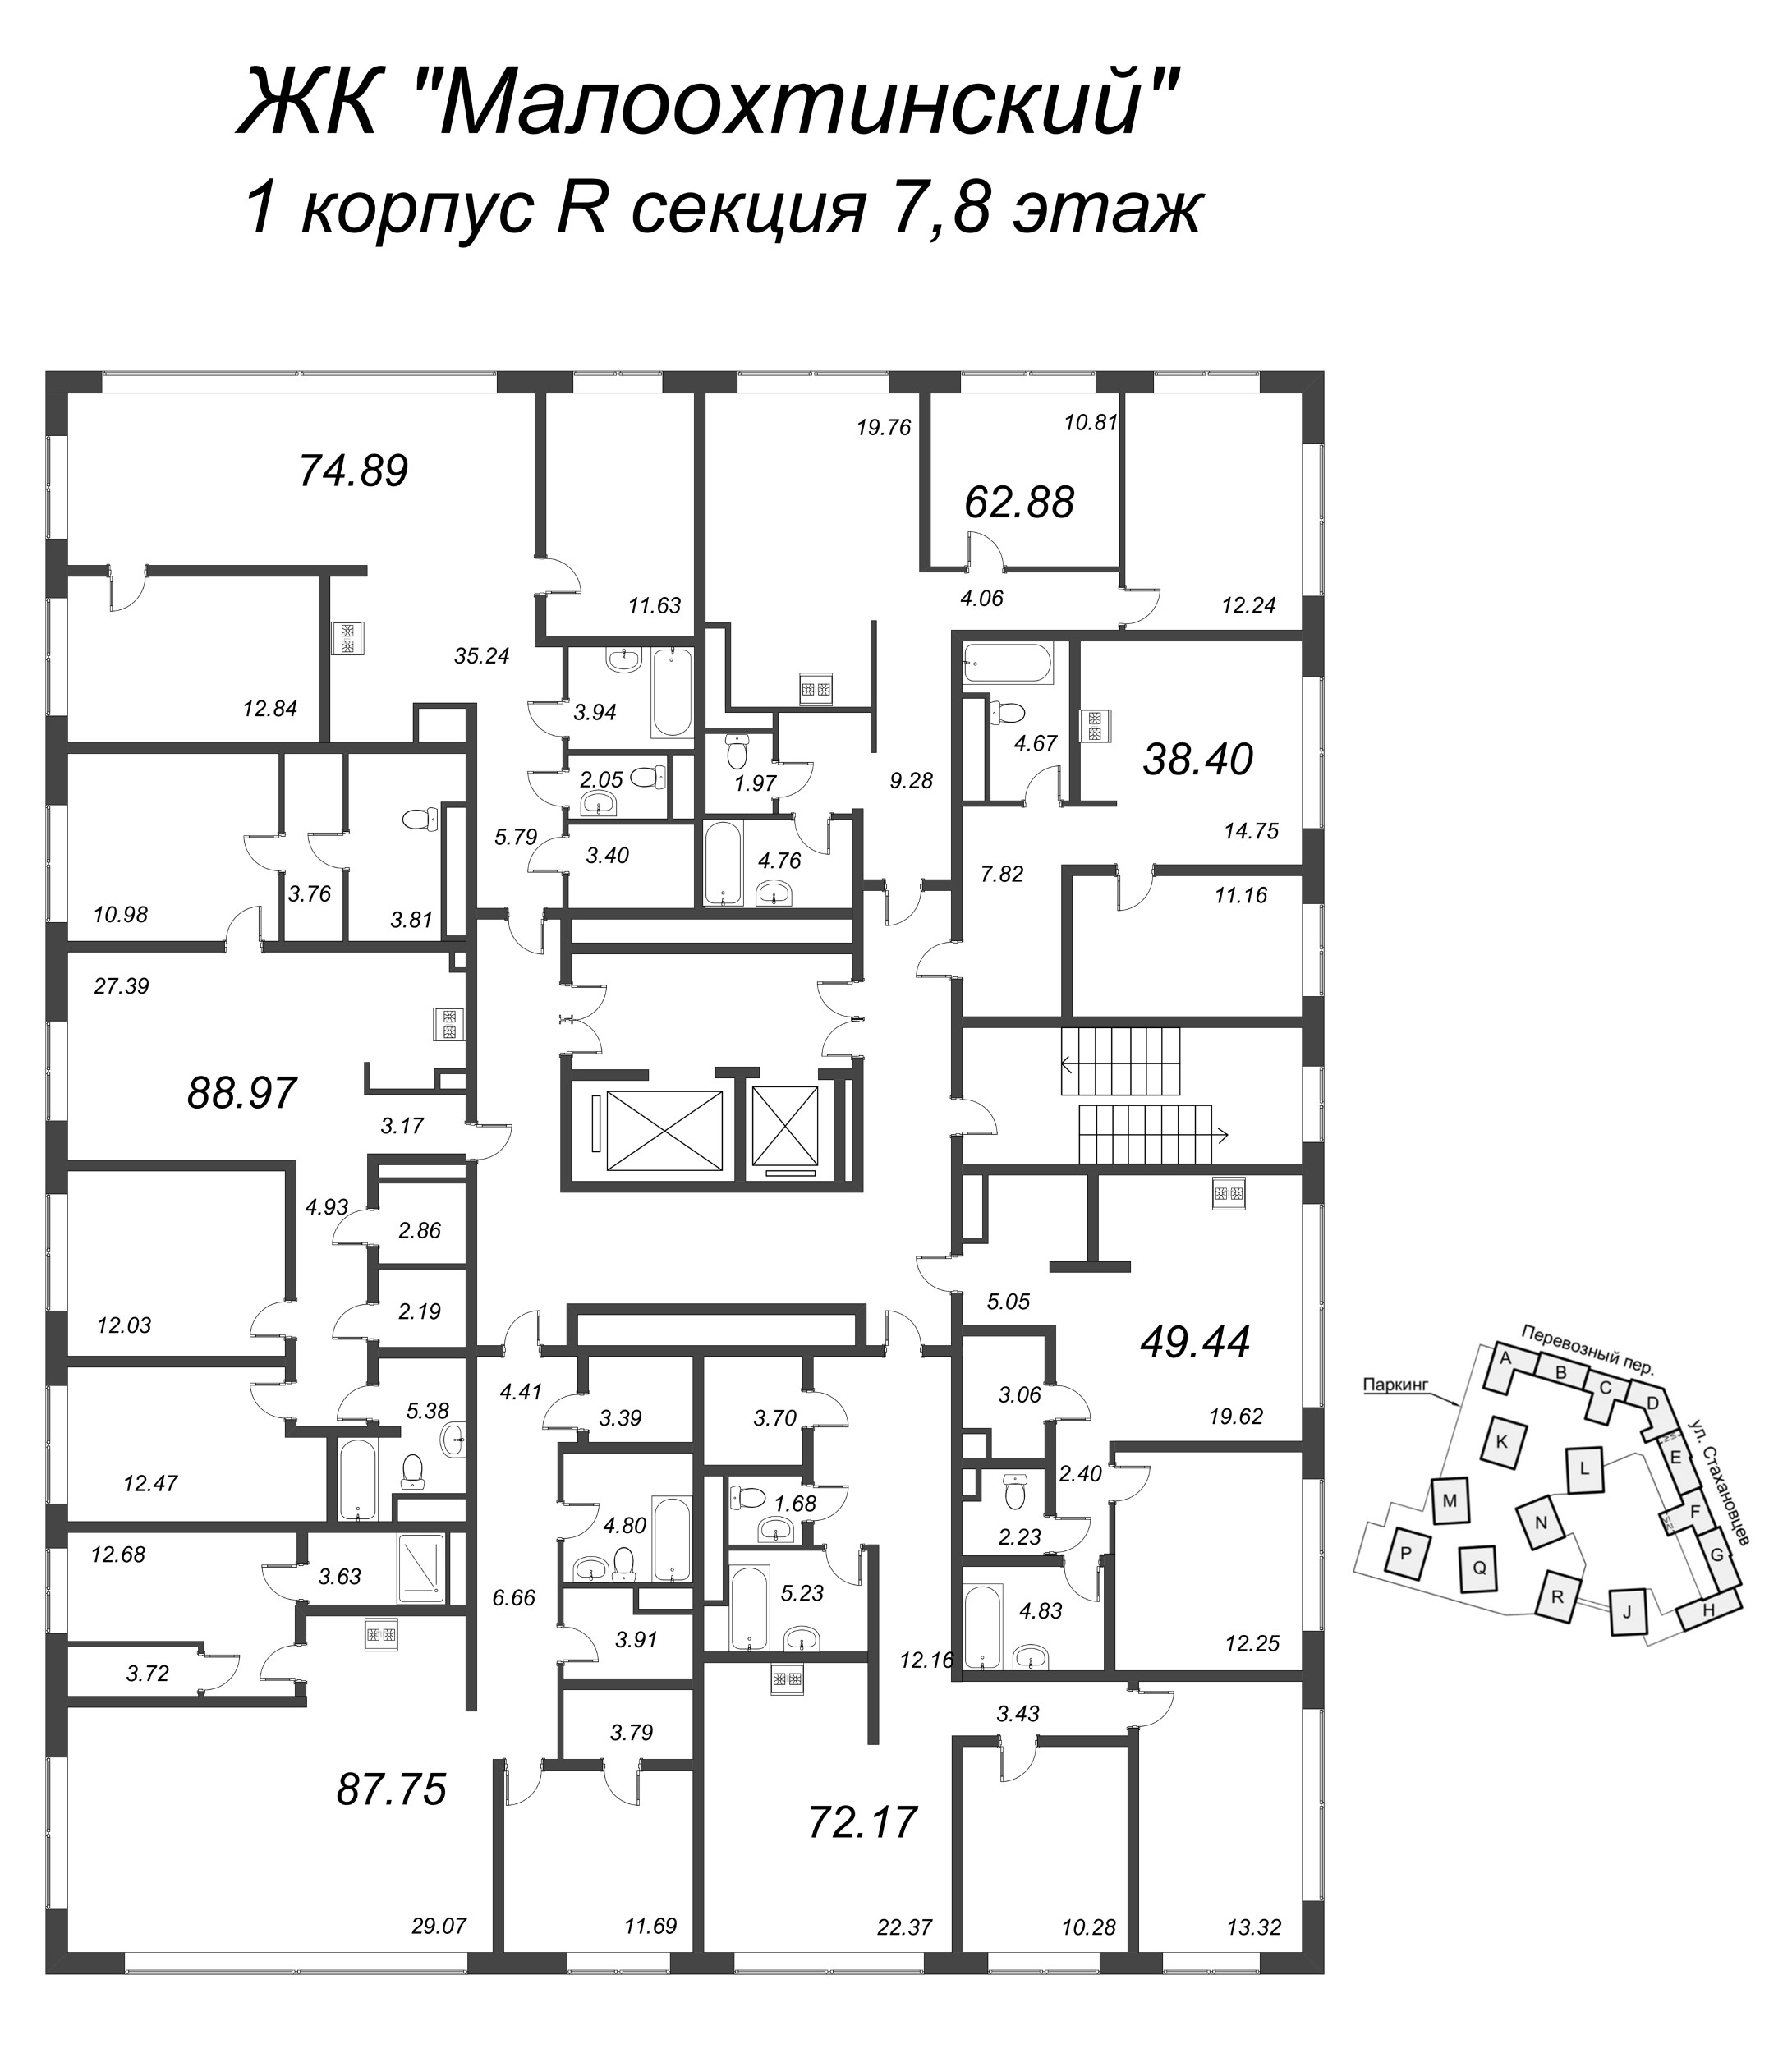 2-комнатная (Евро) квартира, 51.2 м² в ЖК "Малоохтинский, 68" - планировка этажа